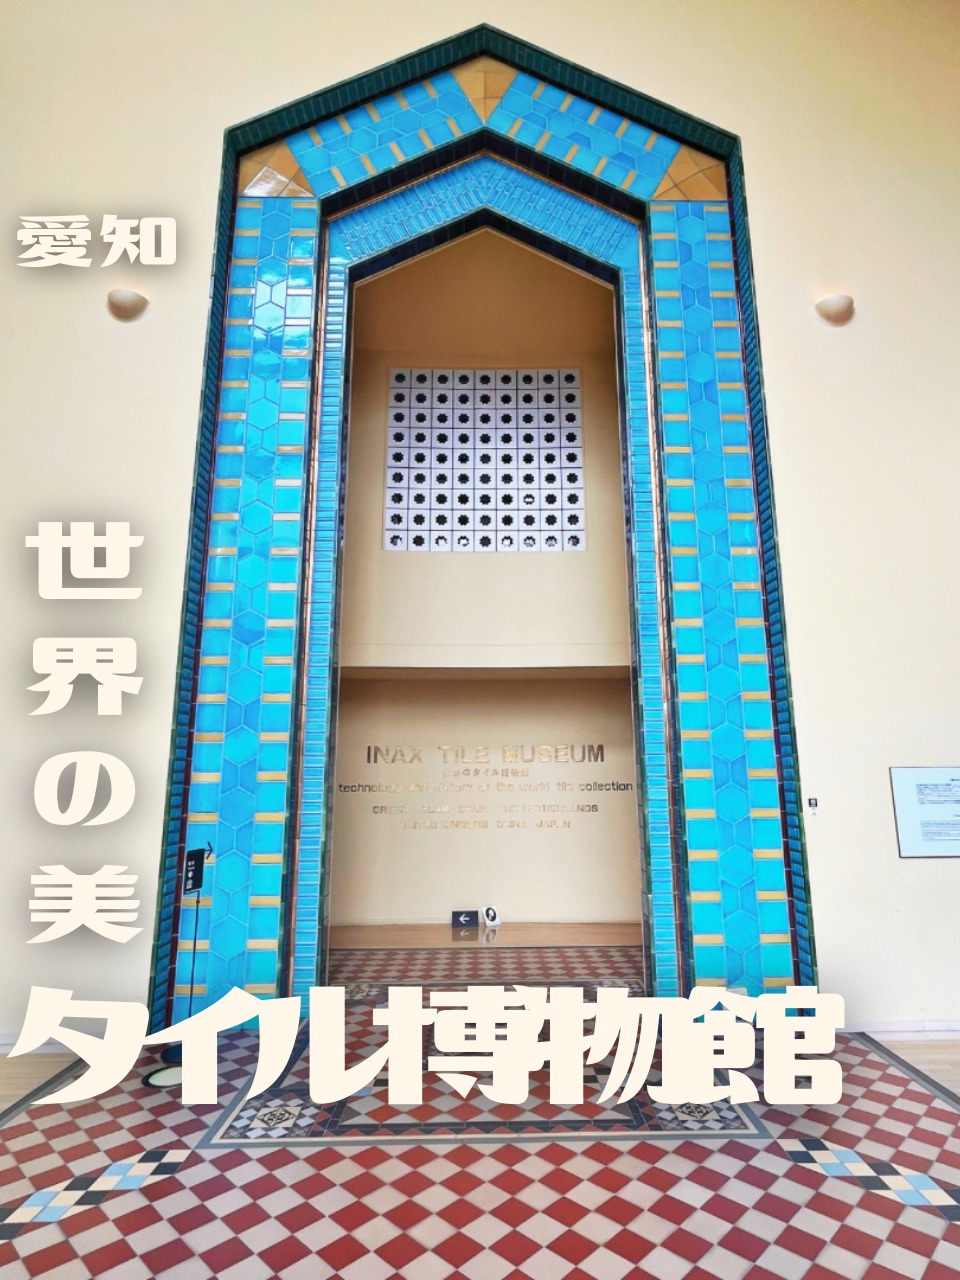 【爱知县】体验世界瓷砖博物馆